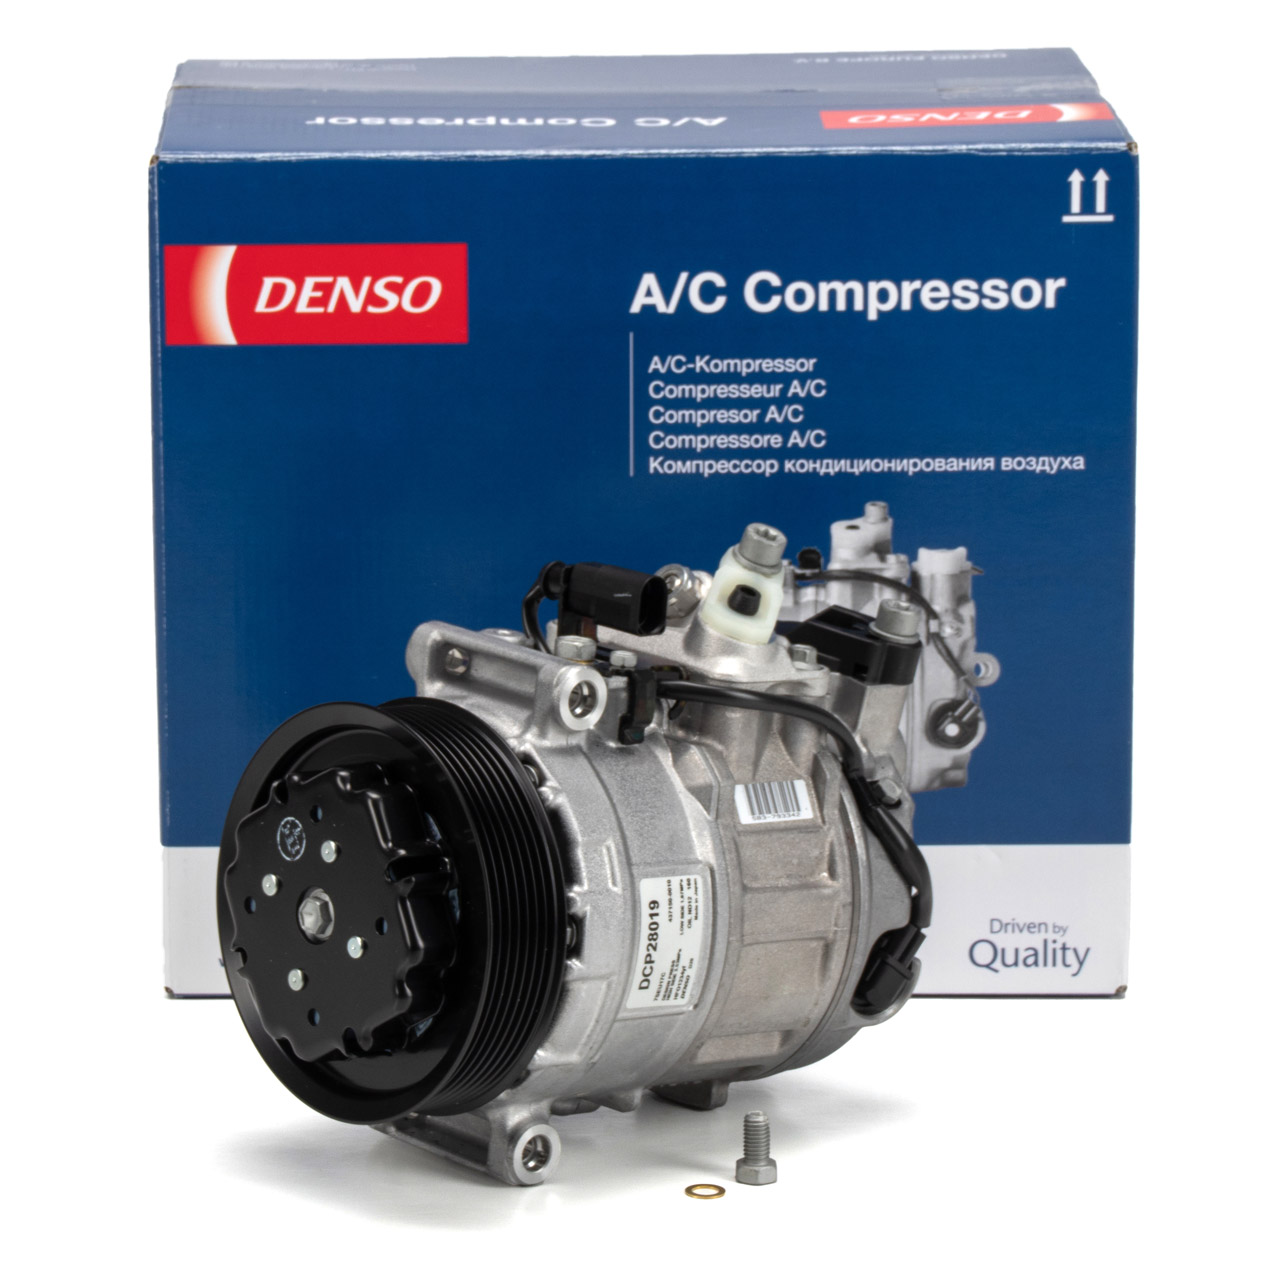 Klima Kompressor für Case ,IHC, MC Cormick Klimaanlage Klimakopmplressor  1999755C2 * | agriTek